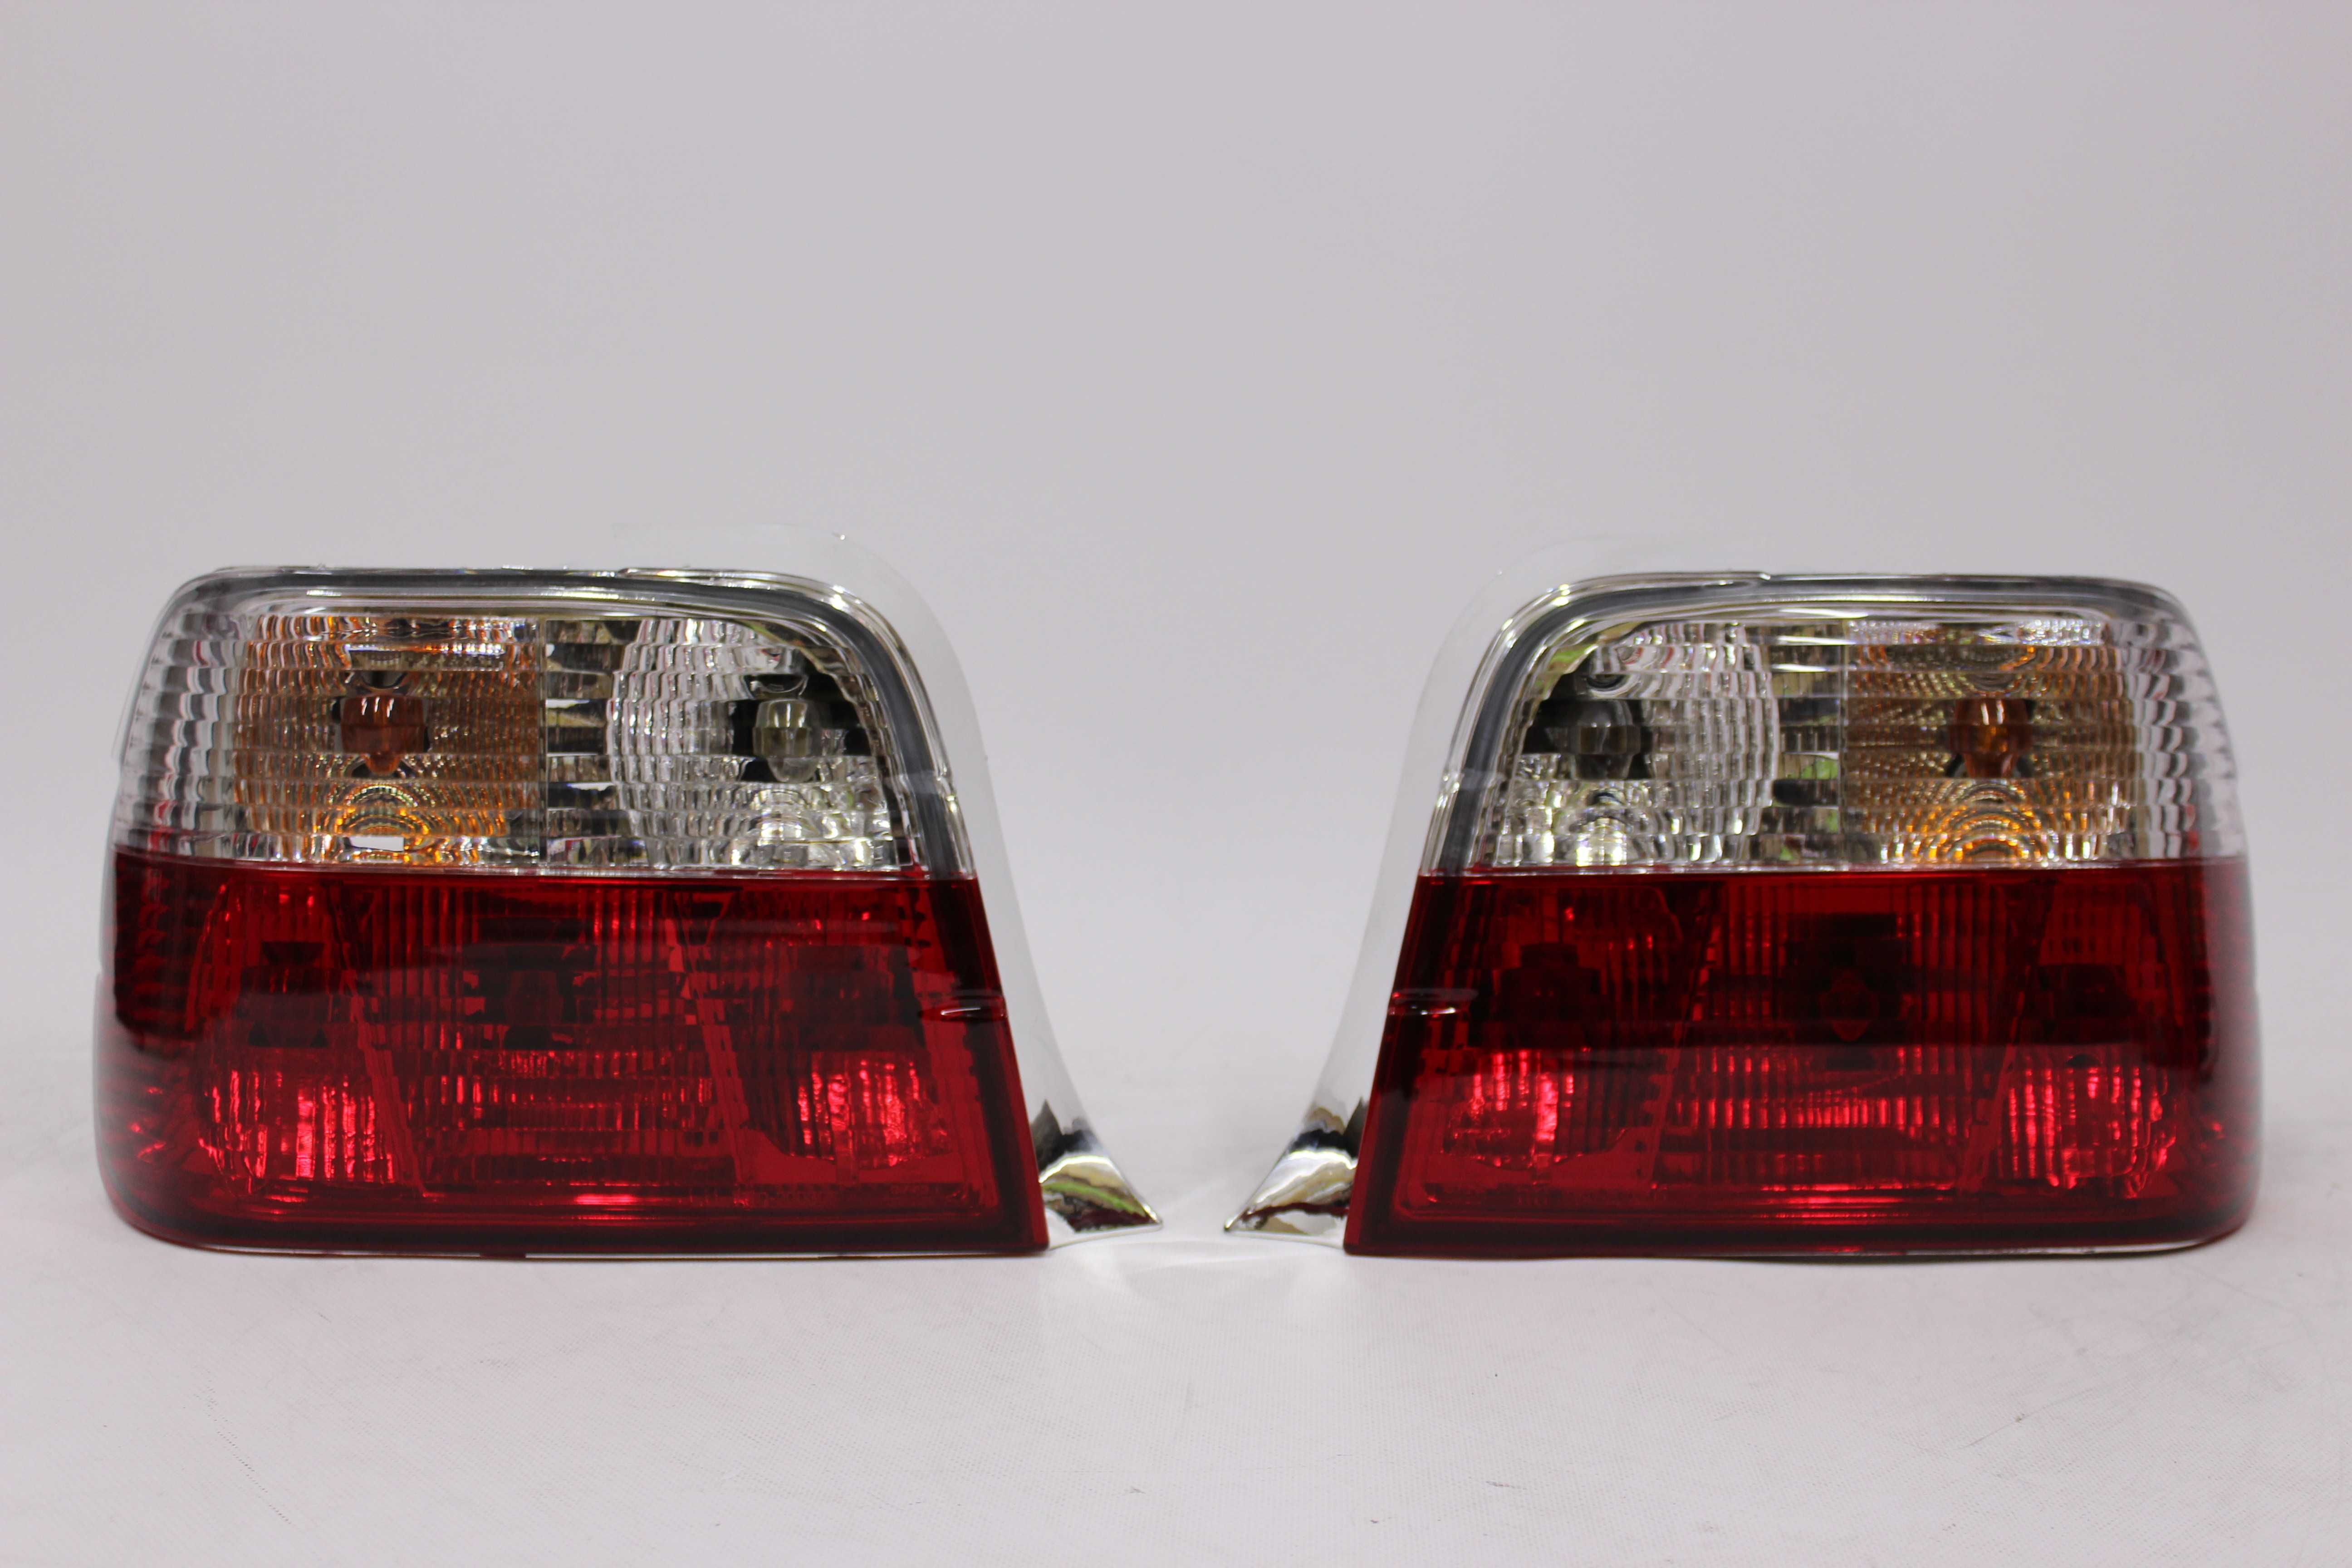 Lampy światła tył tylne BMW E36 COMPACT 90-99 RED Clear TUNING NOWE